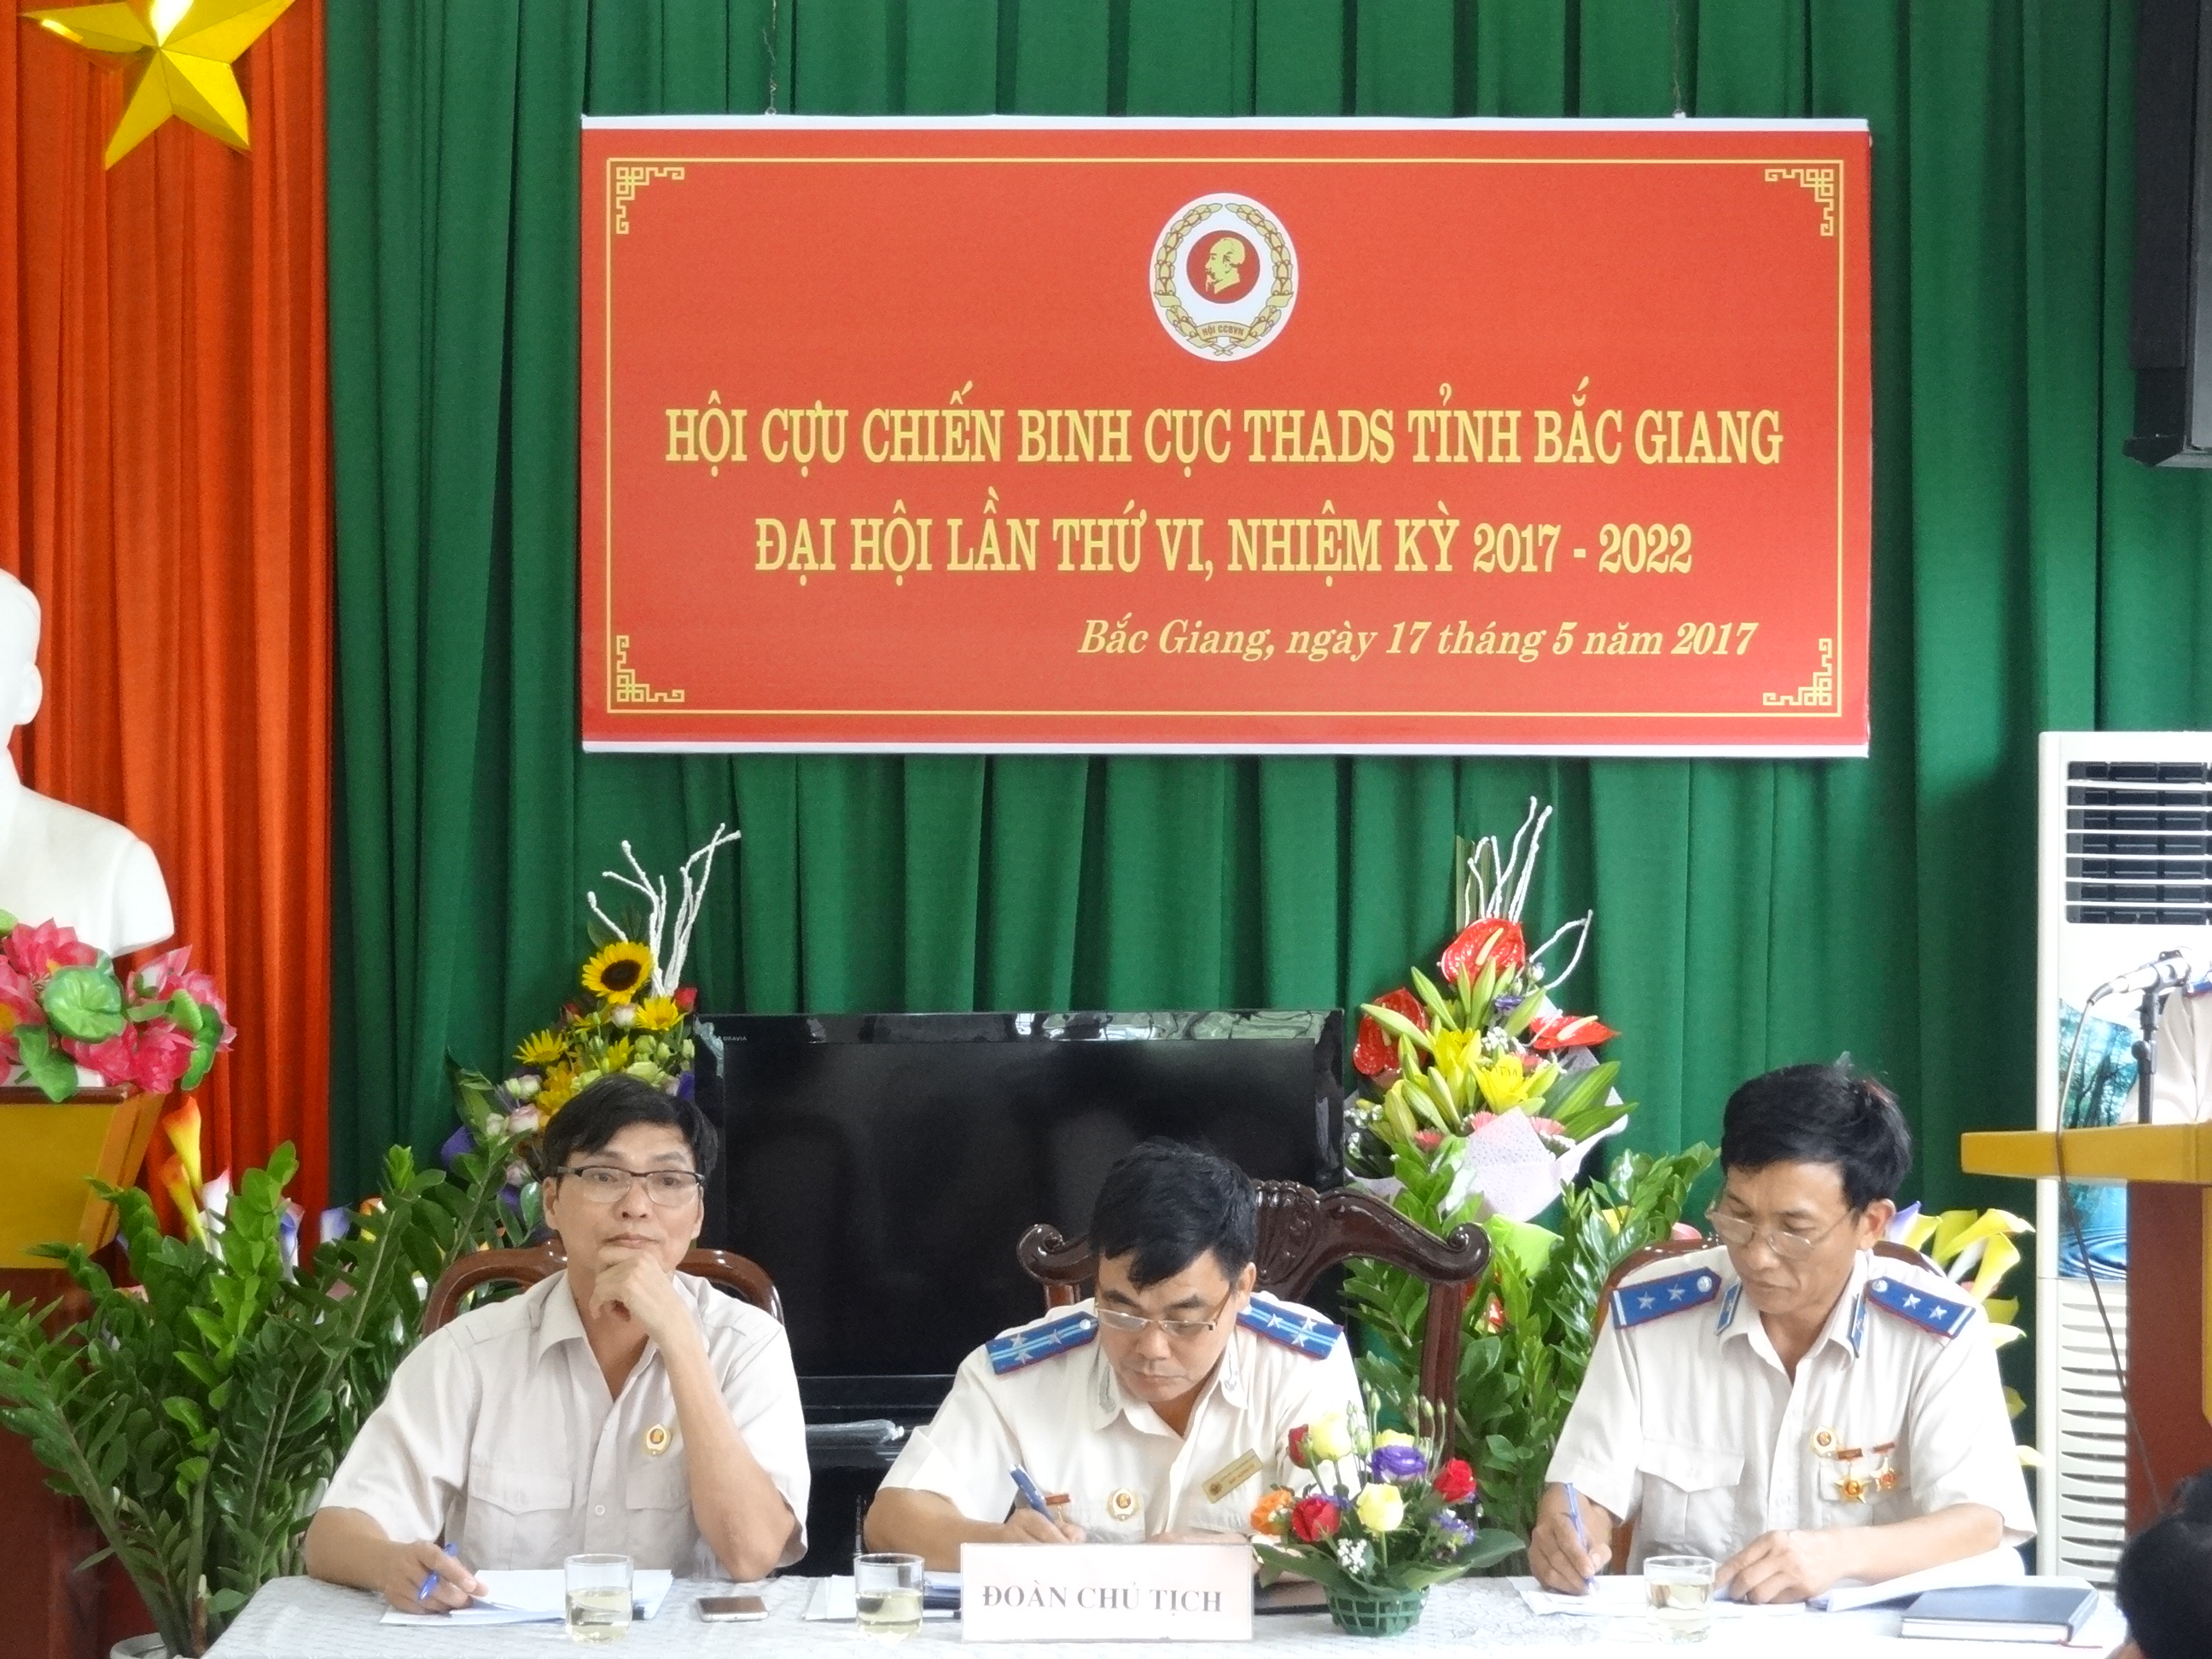 Đại hội Hội Cựu chiến binh Cục THADS tỉnh lần thứ VI nhiệm kỳ 2017-2022